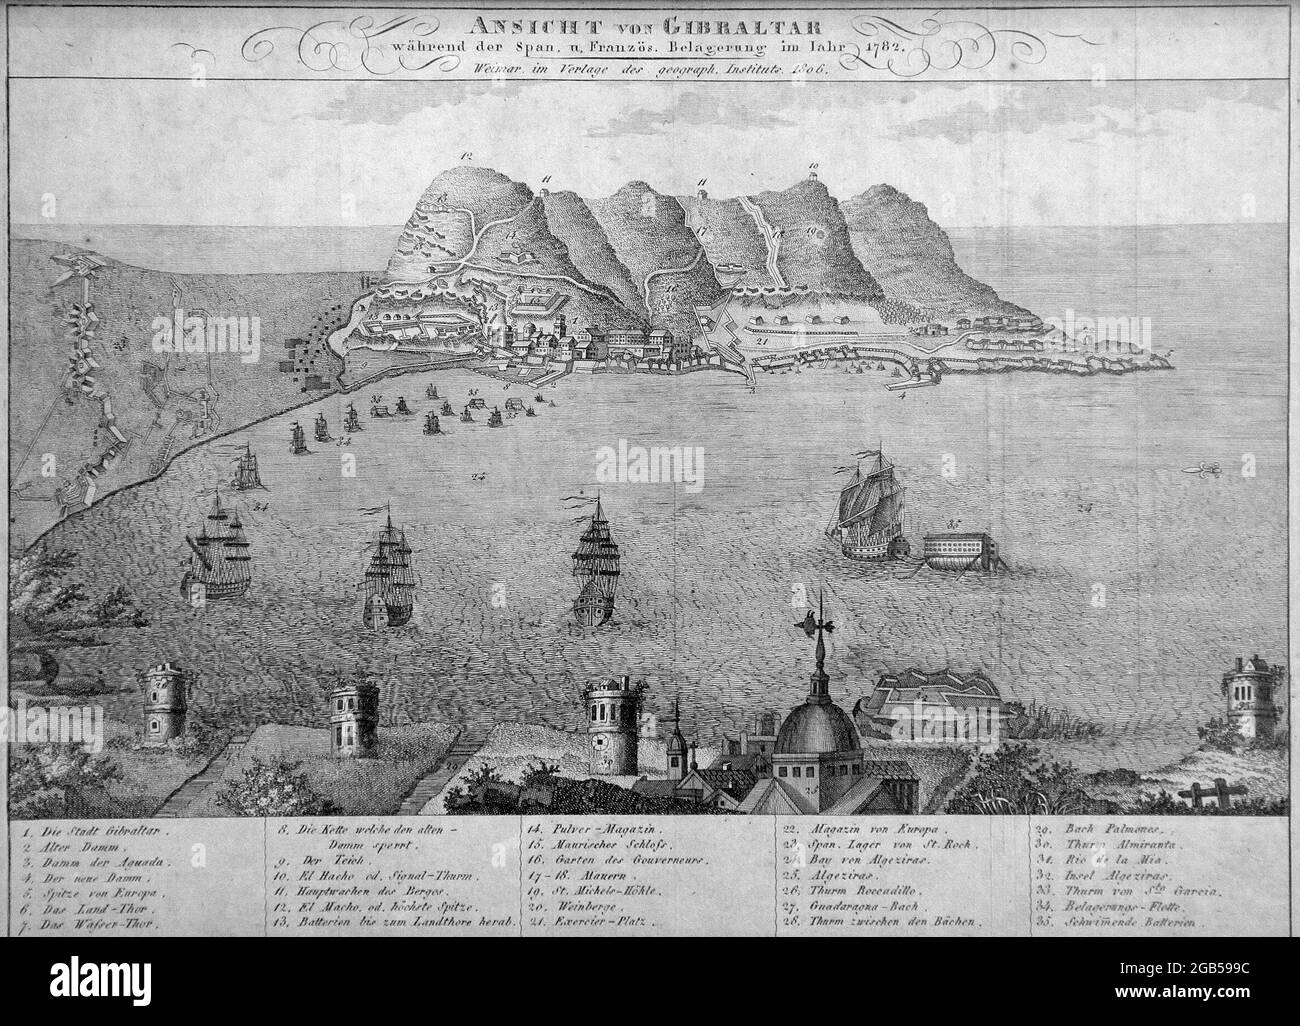 Ansicht von Gibraltar.Wahrend der spanische und franzosische Belaerung im jahr 1782.Weimar im verlage der geograph.institut 1806 Banque D'Images